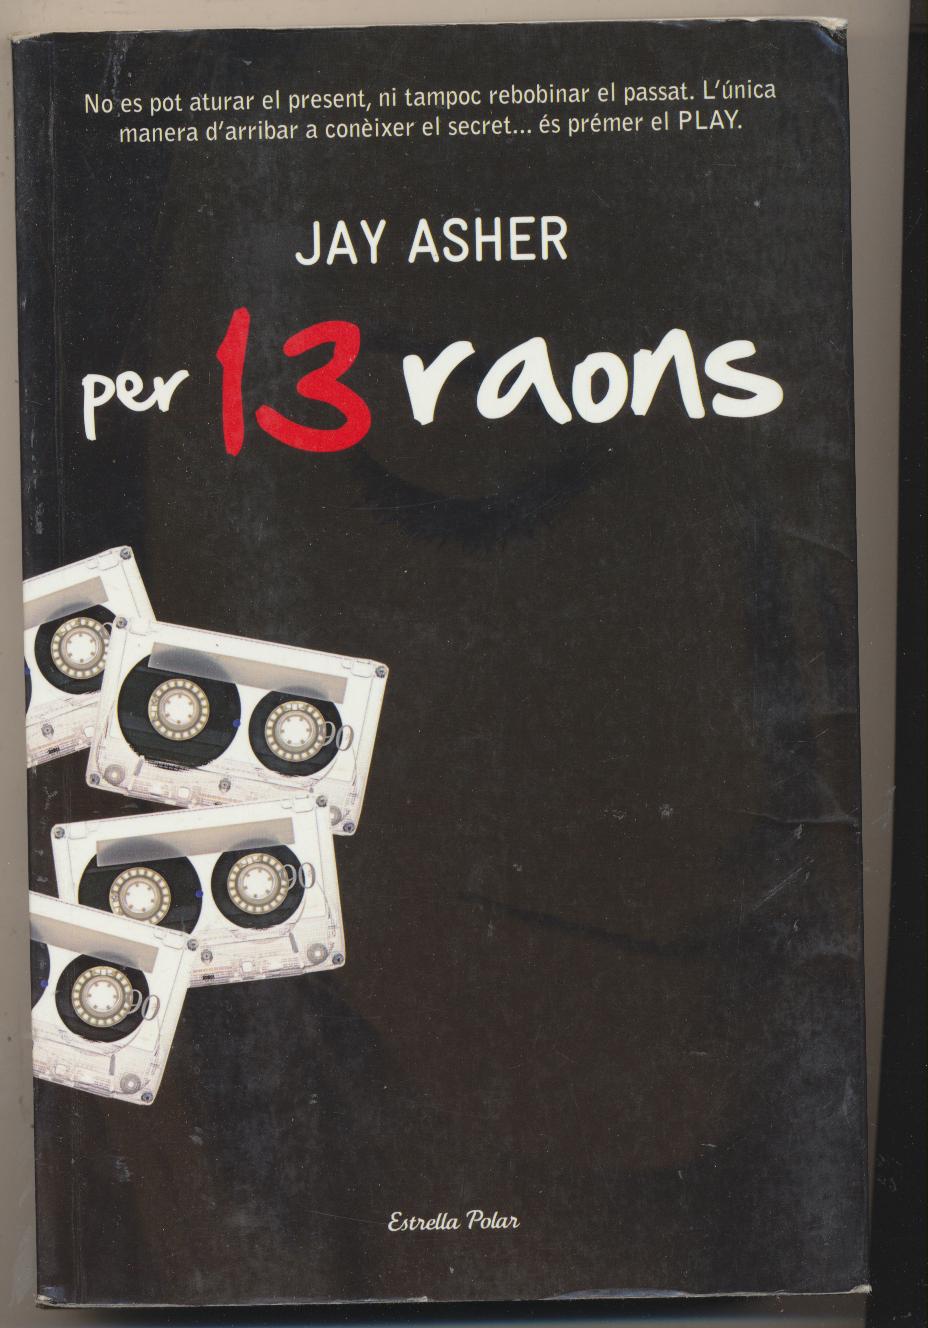 Jay Asher. Per 13 raons. 1ª Edición 2009